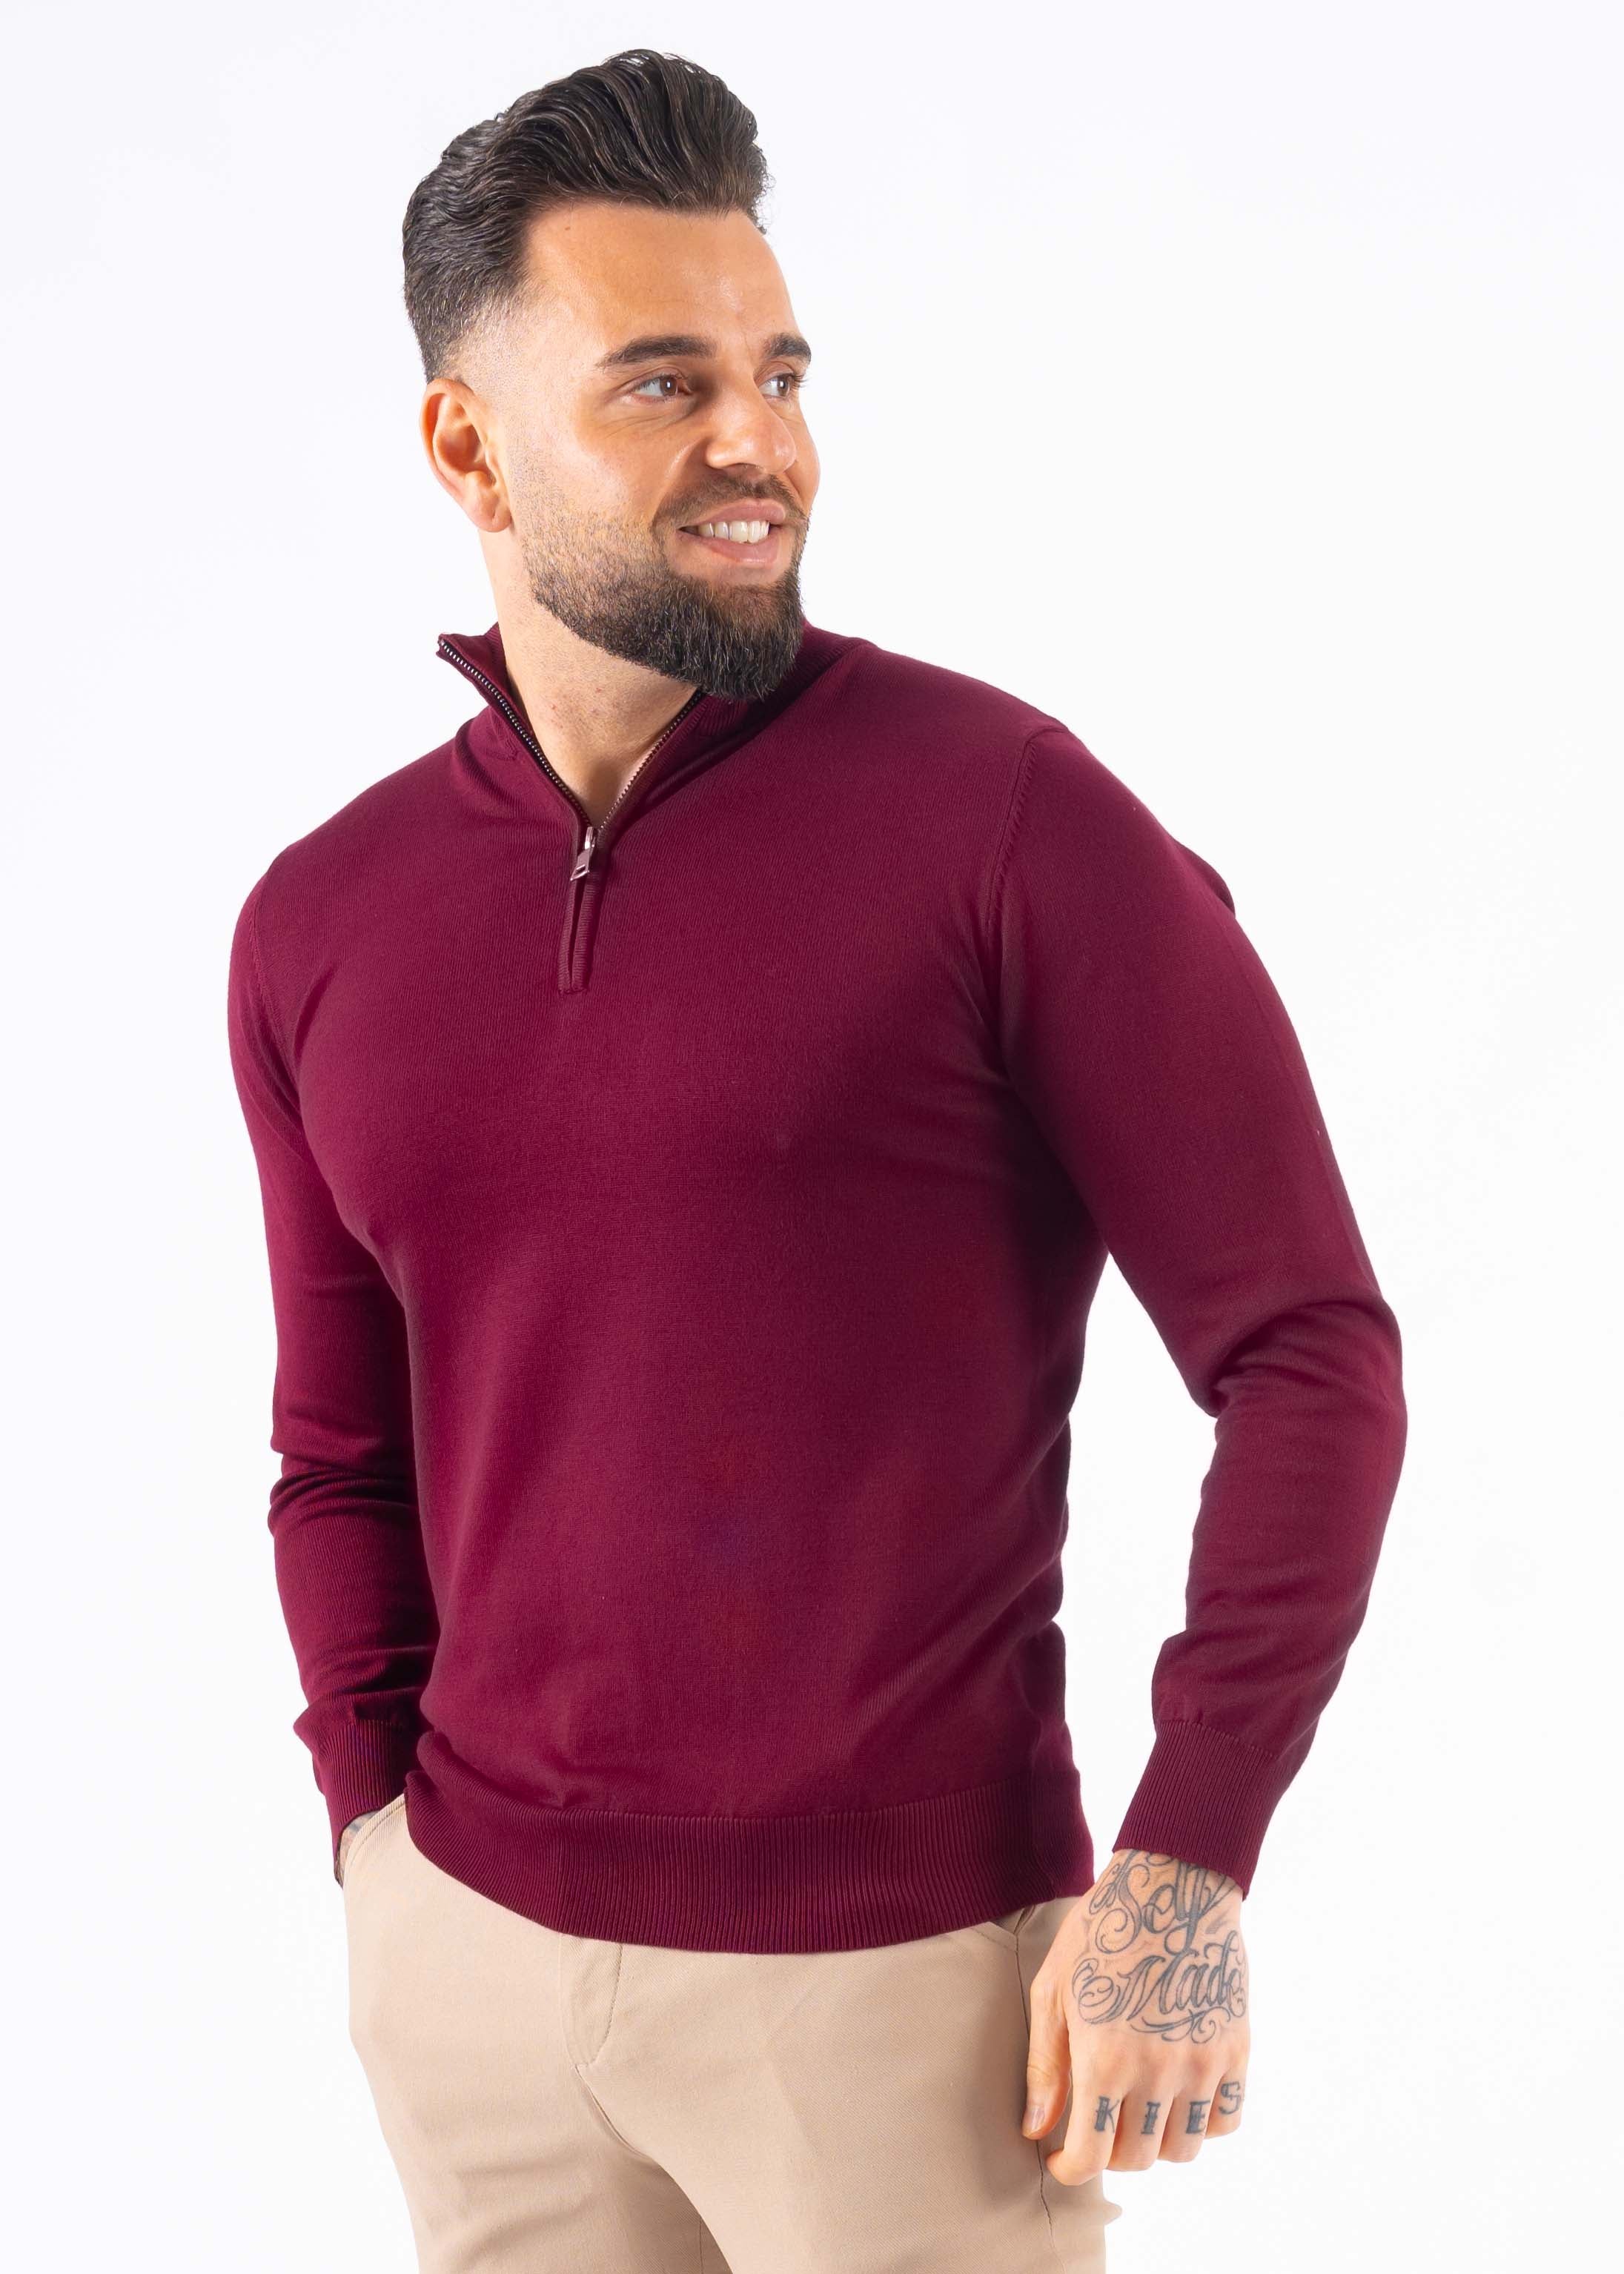 Sweater zipper bordeaux